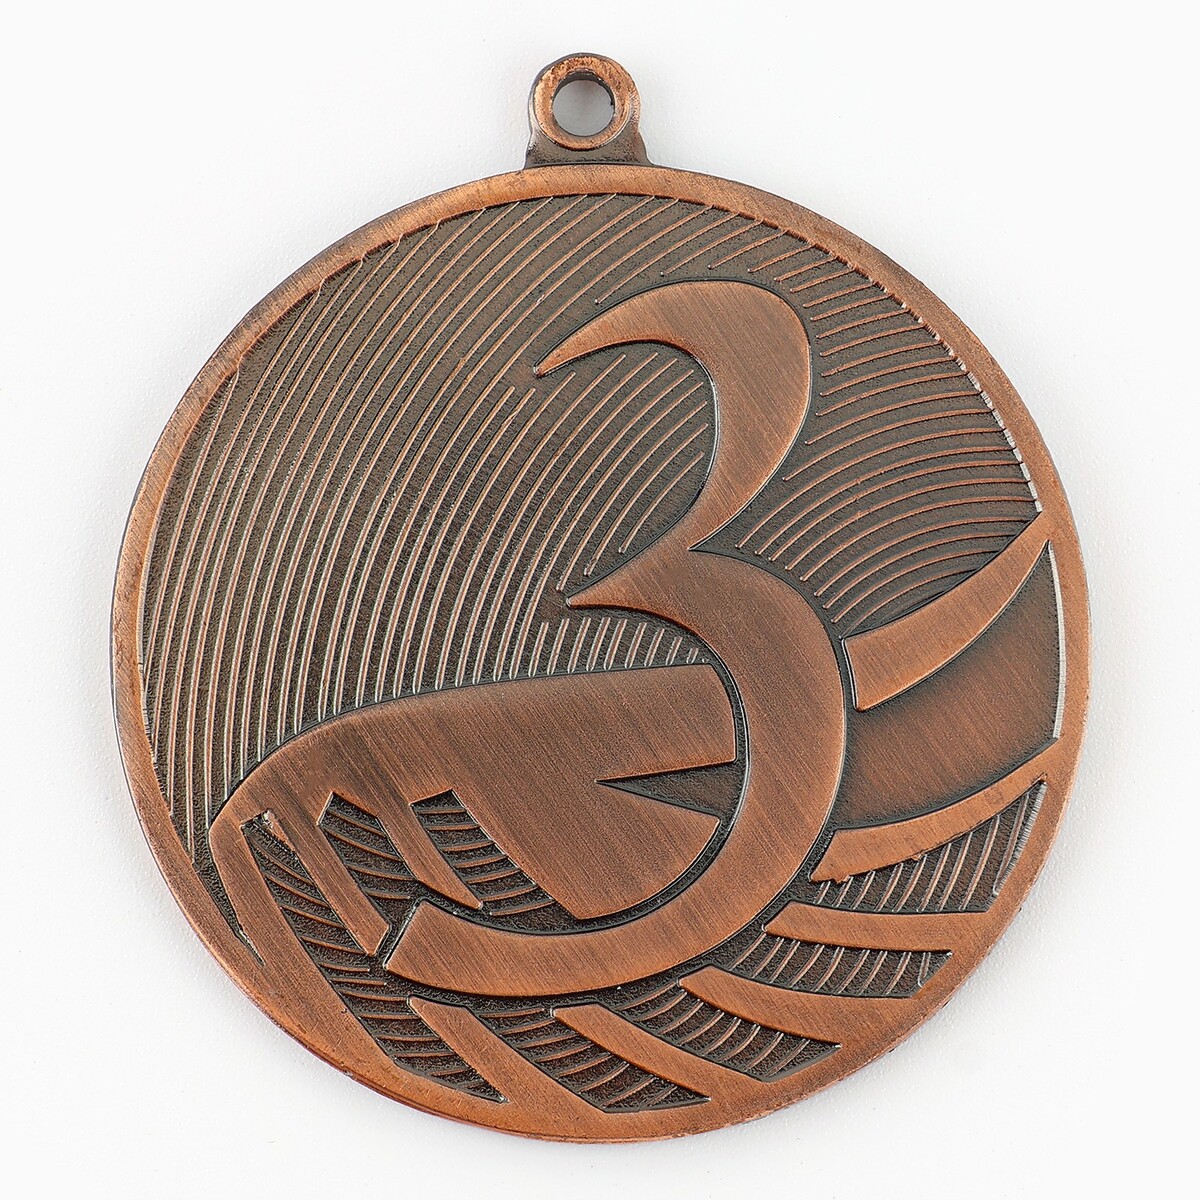 Медаль призовая 001 диам 5см. 3 место. цвет бронз. без ленты медаль призовая 193 диам 3 5 см 3 место триколор бронз без ленты